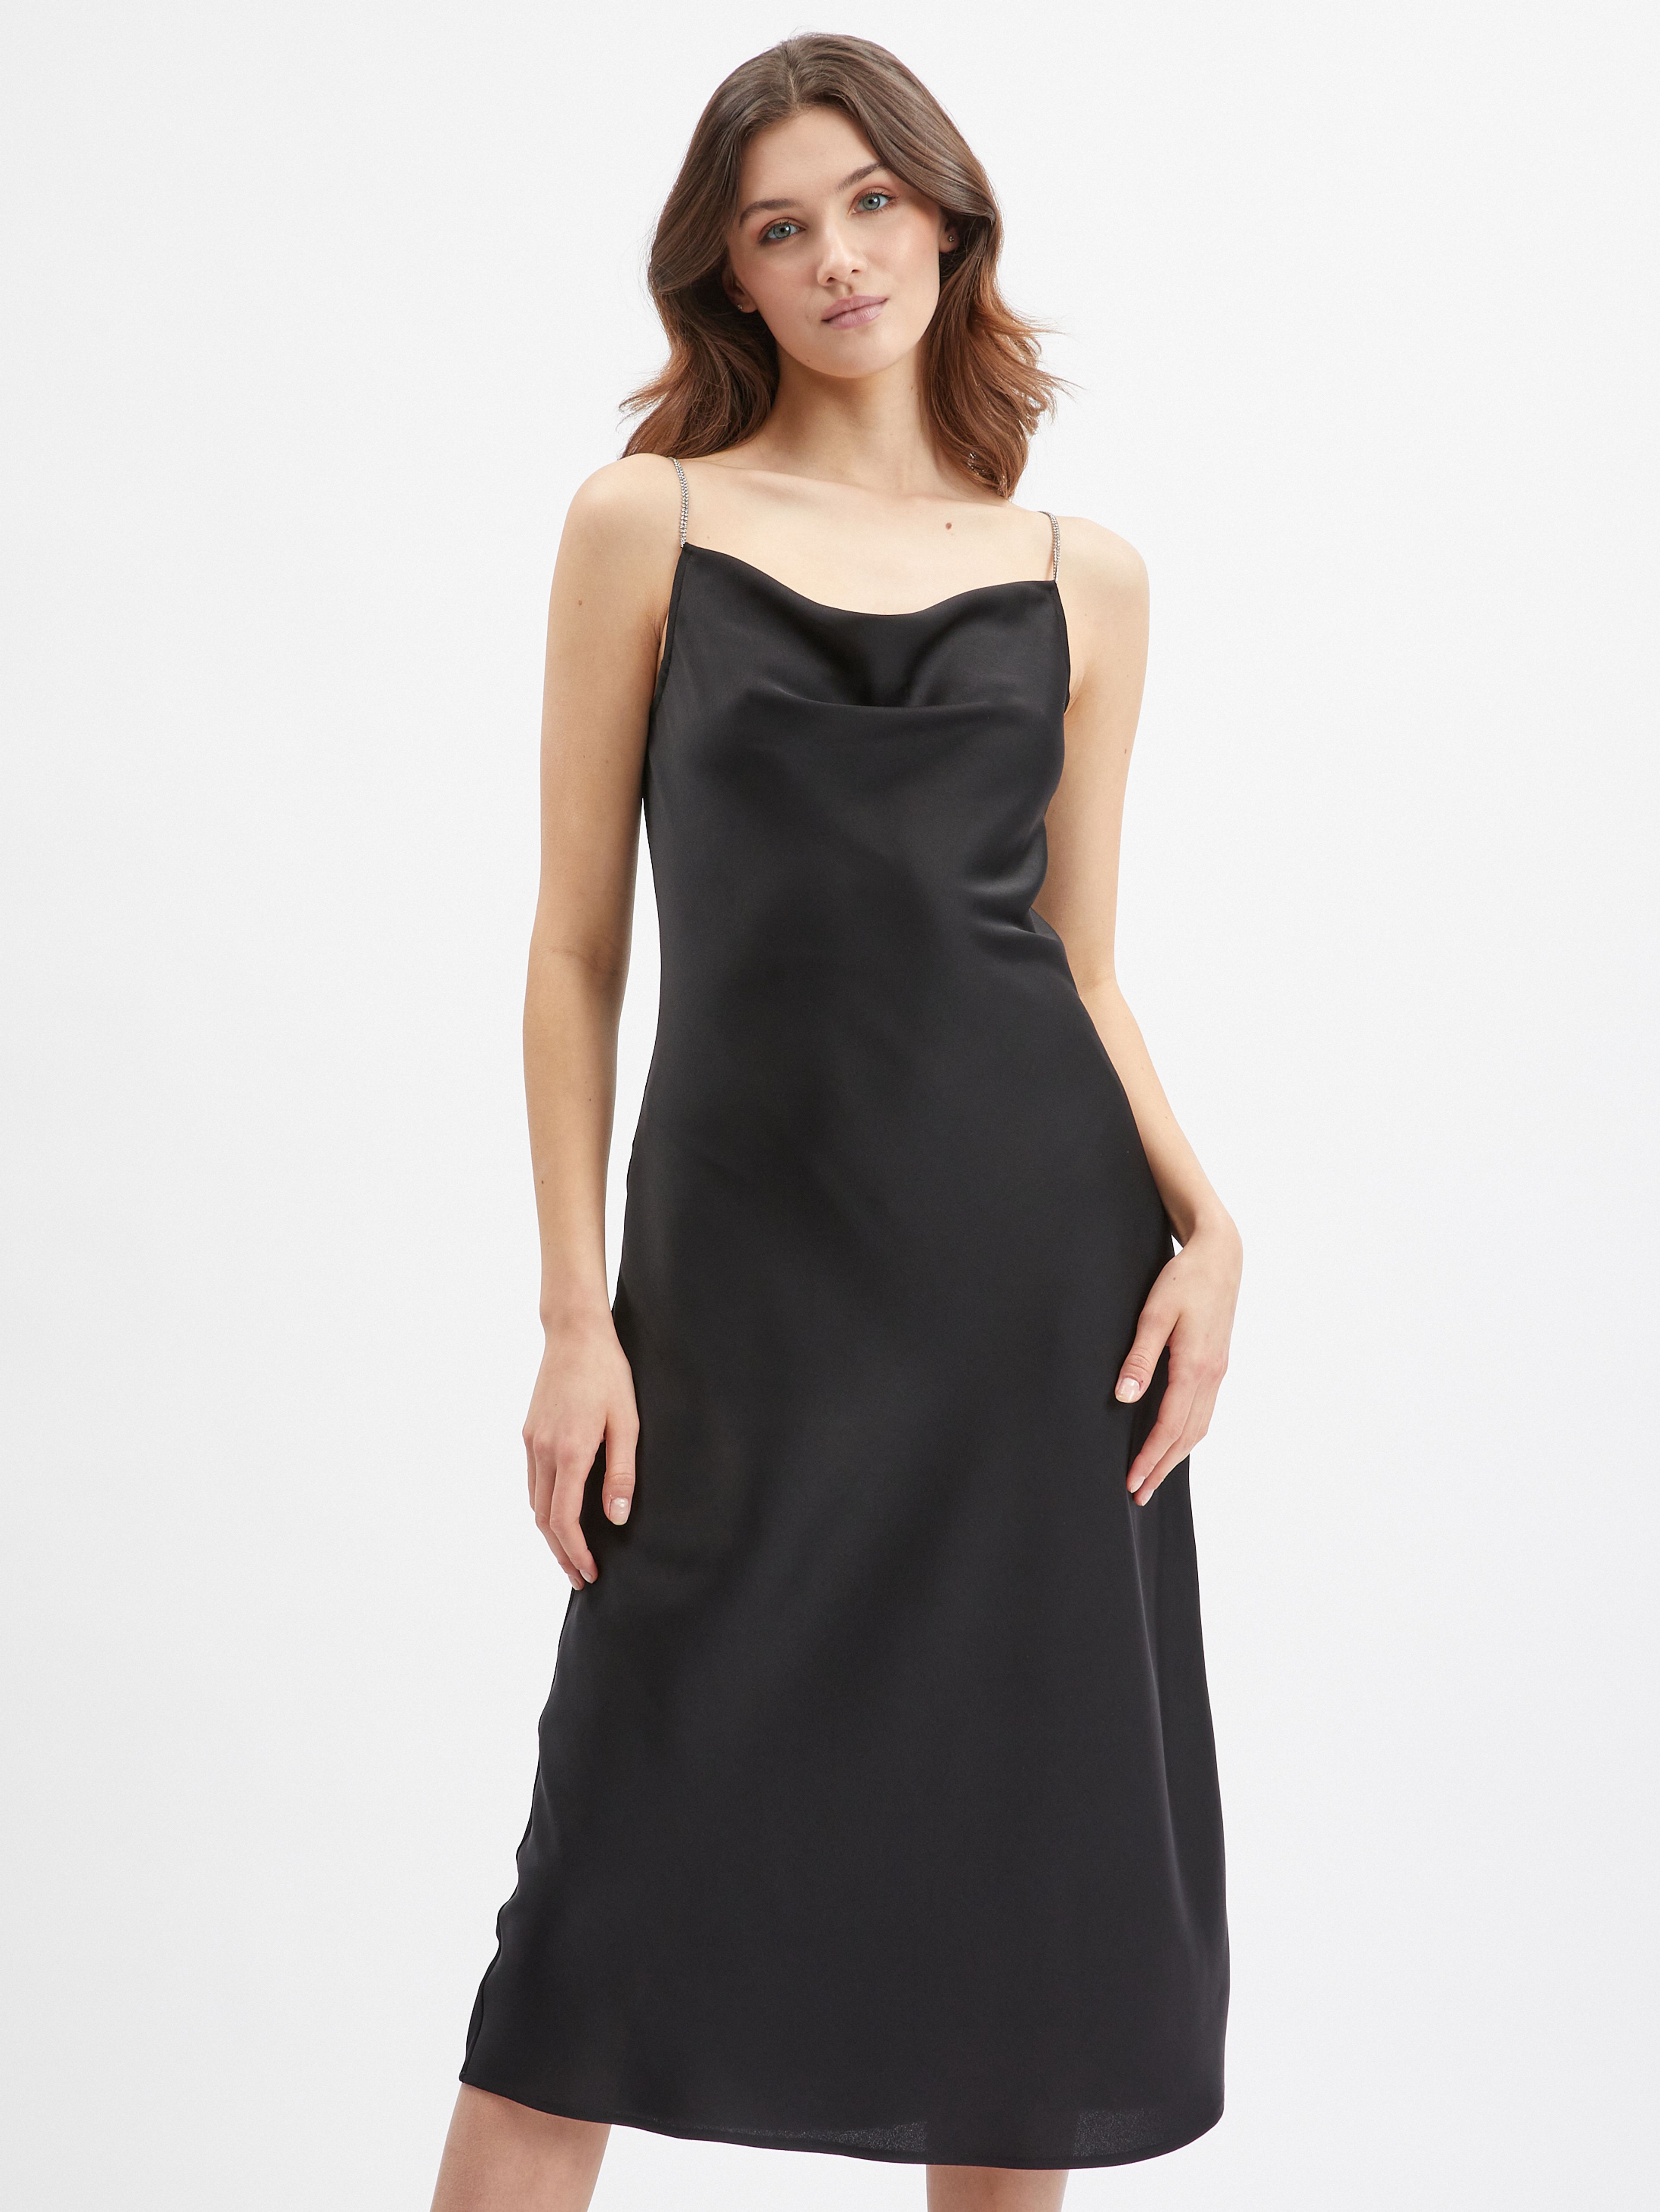 Čierne dámske šaty ORSAY